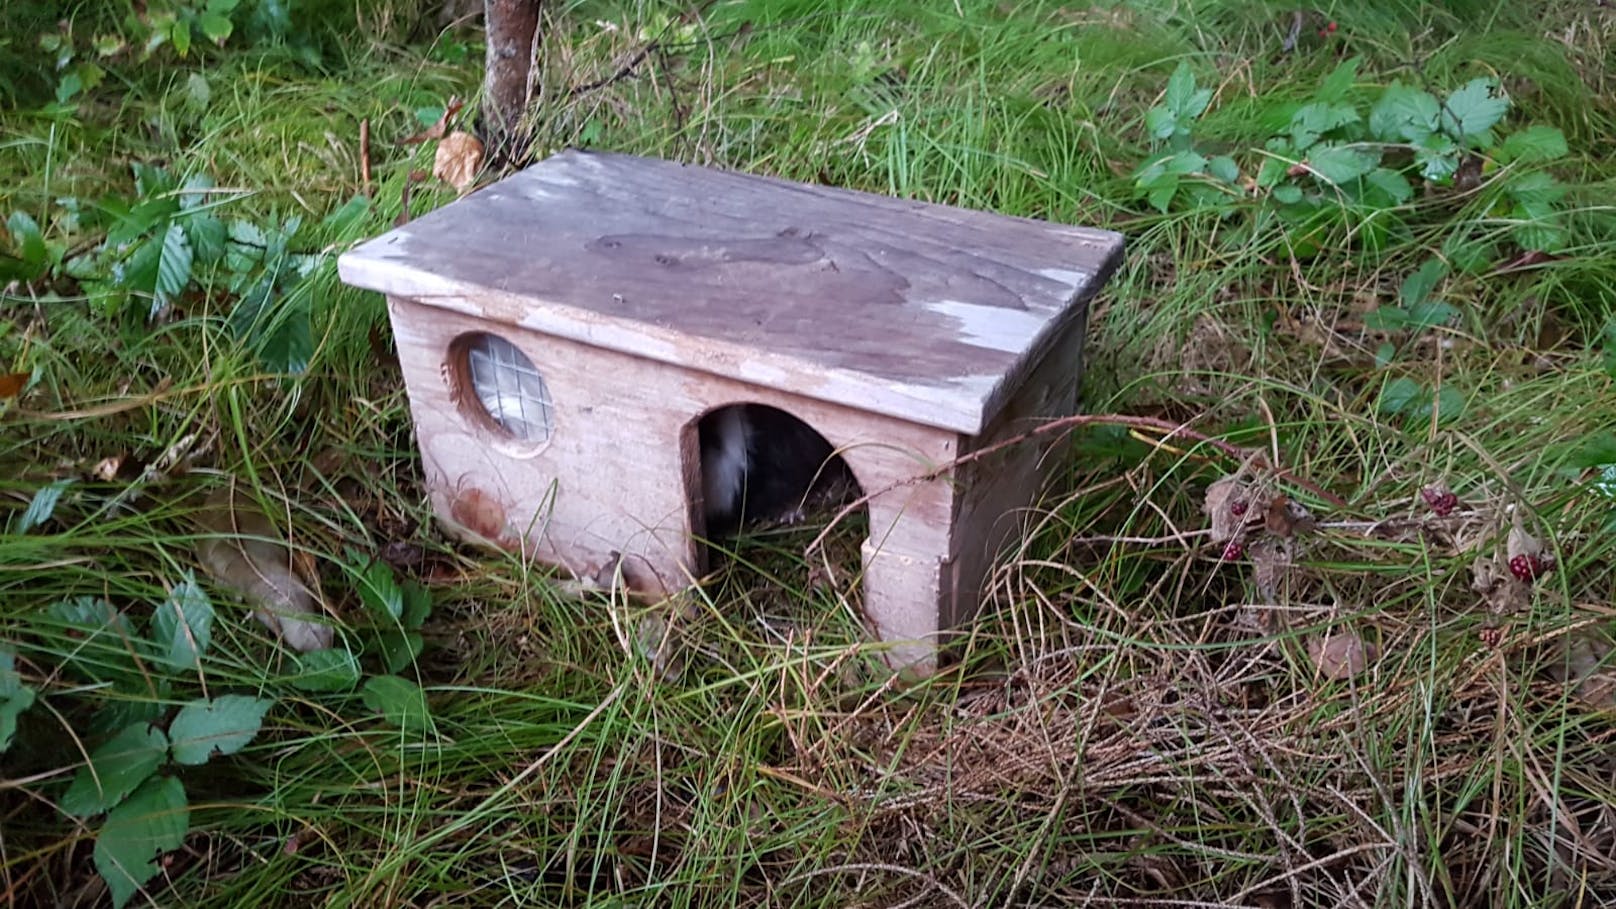 Spaziergeher fanden dieses Häuschen im Wald.